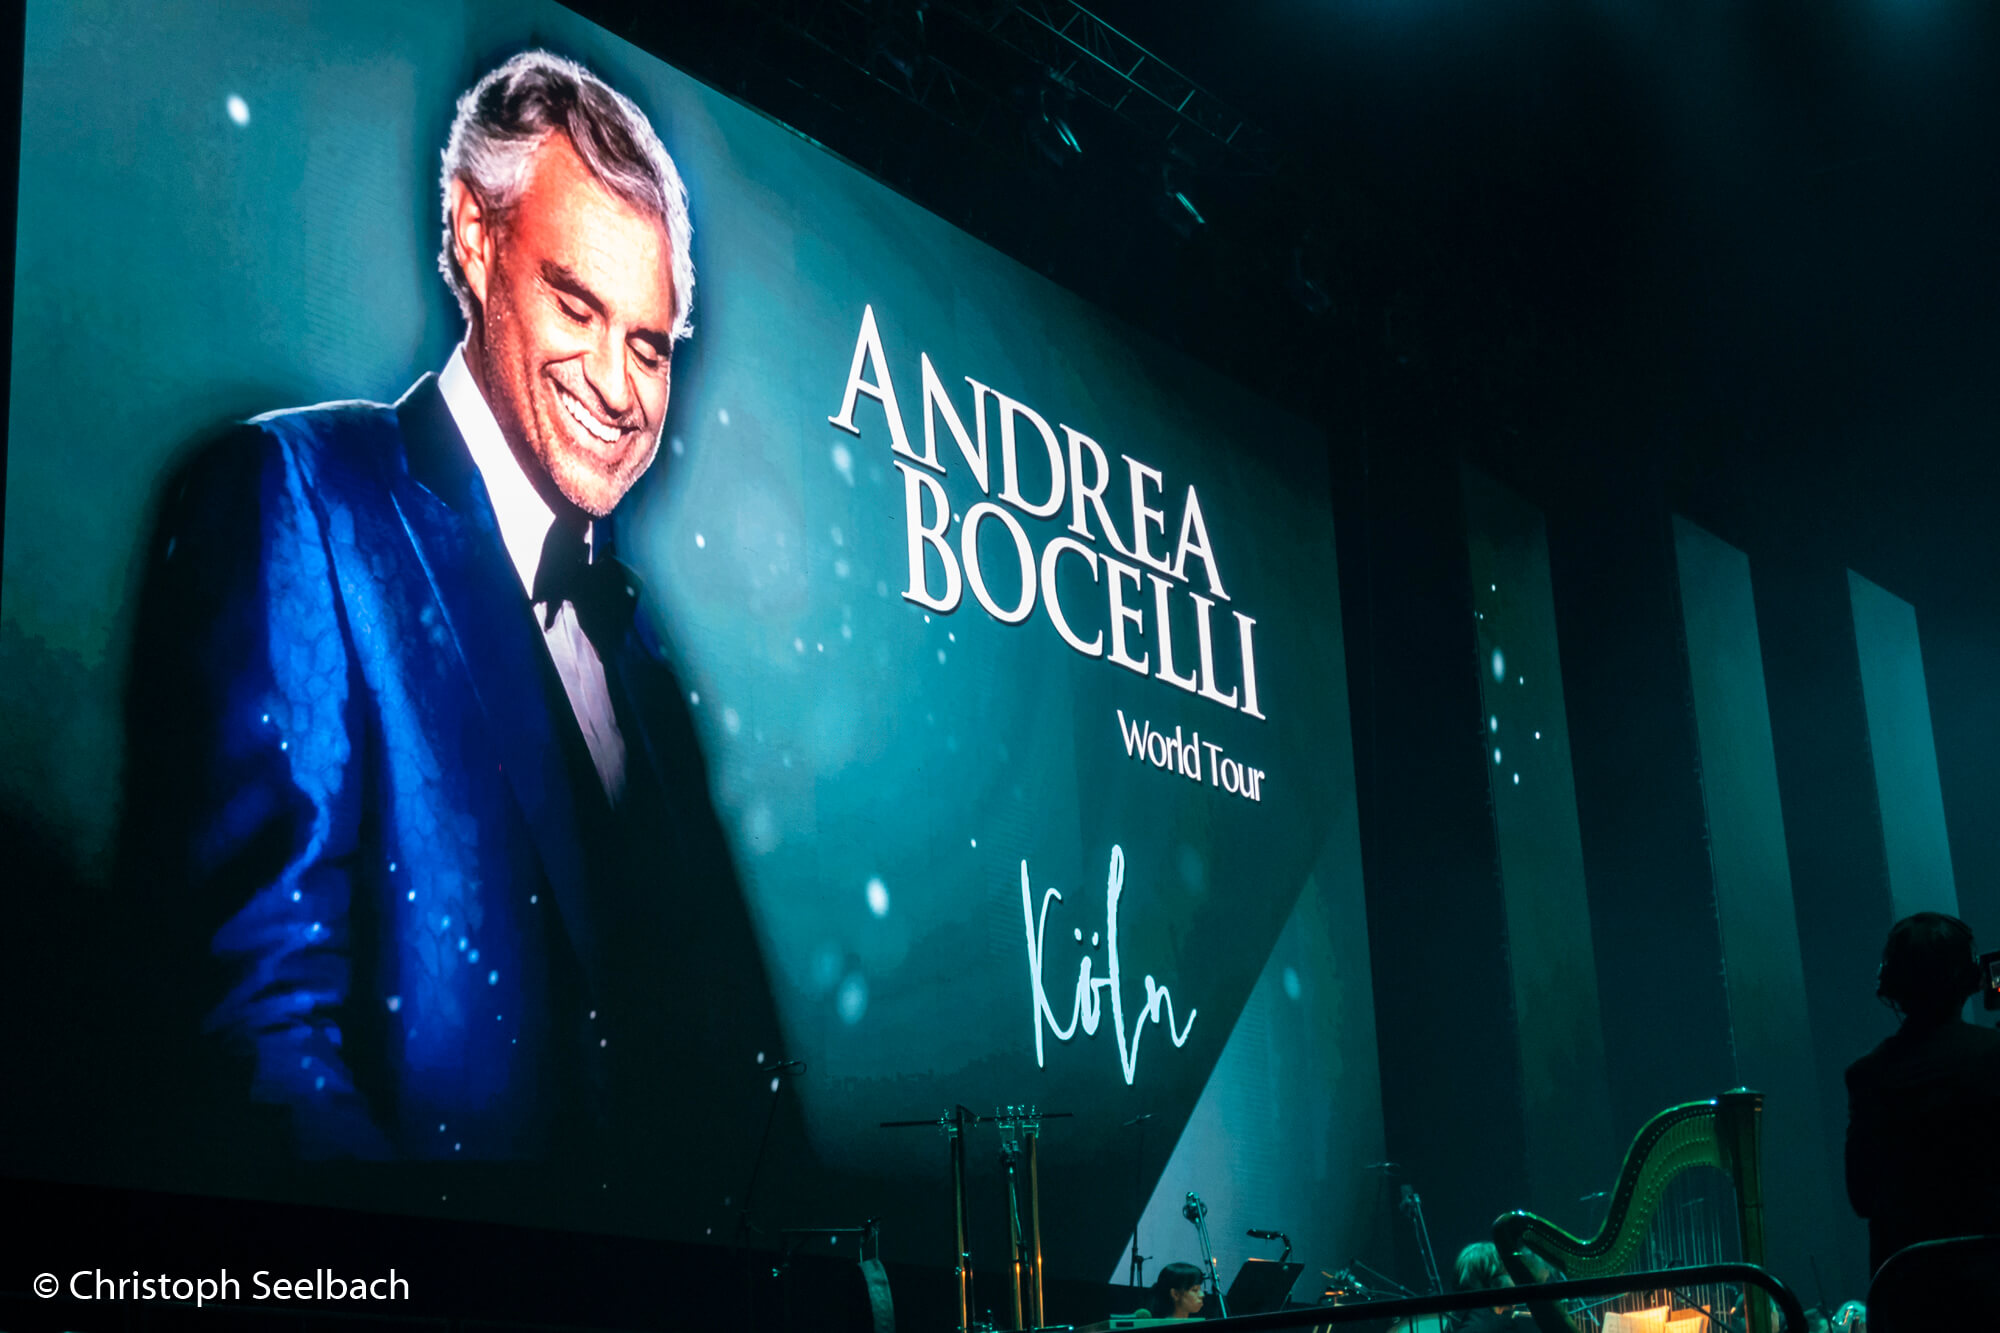 Beamer-Screen mit Foto von Andrea Bocelli und Titel “Andrea Bocelli World Tour”